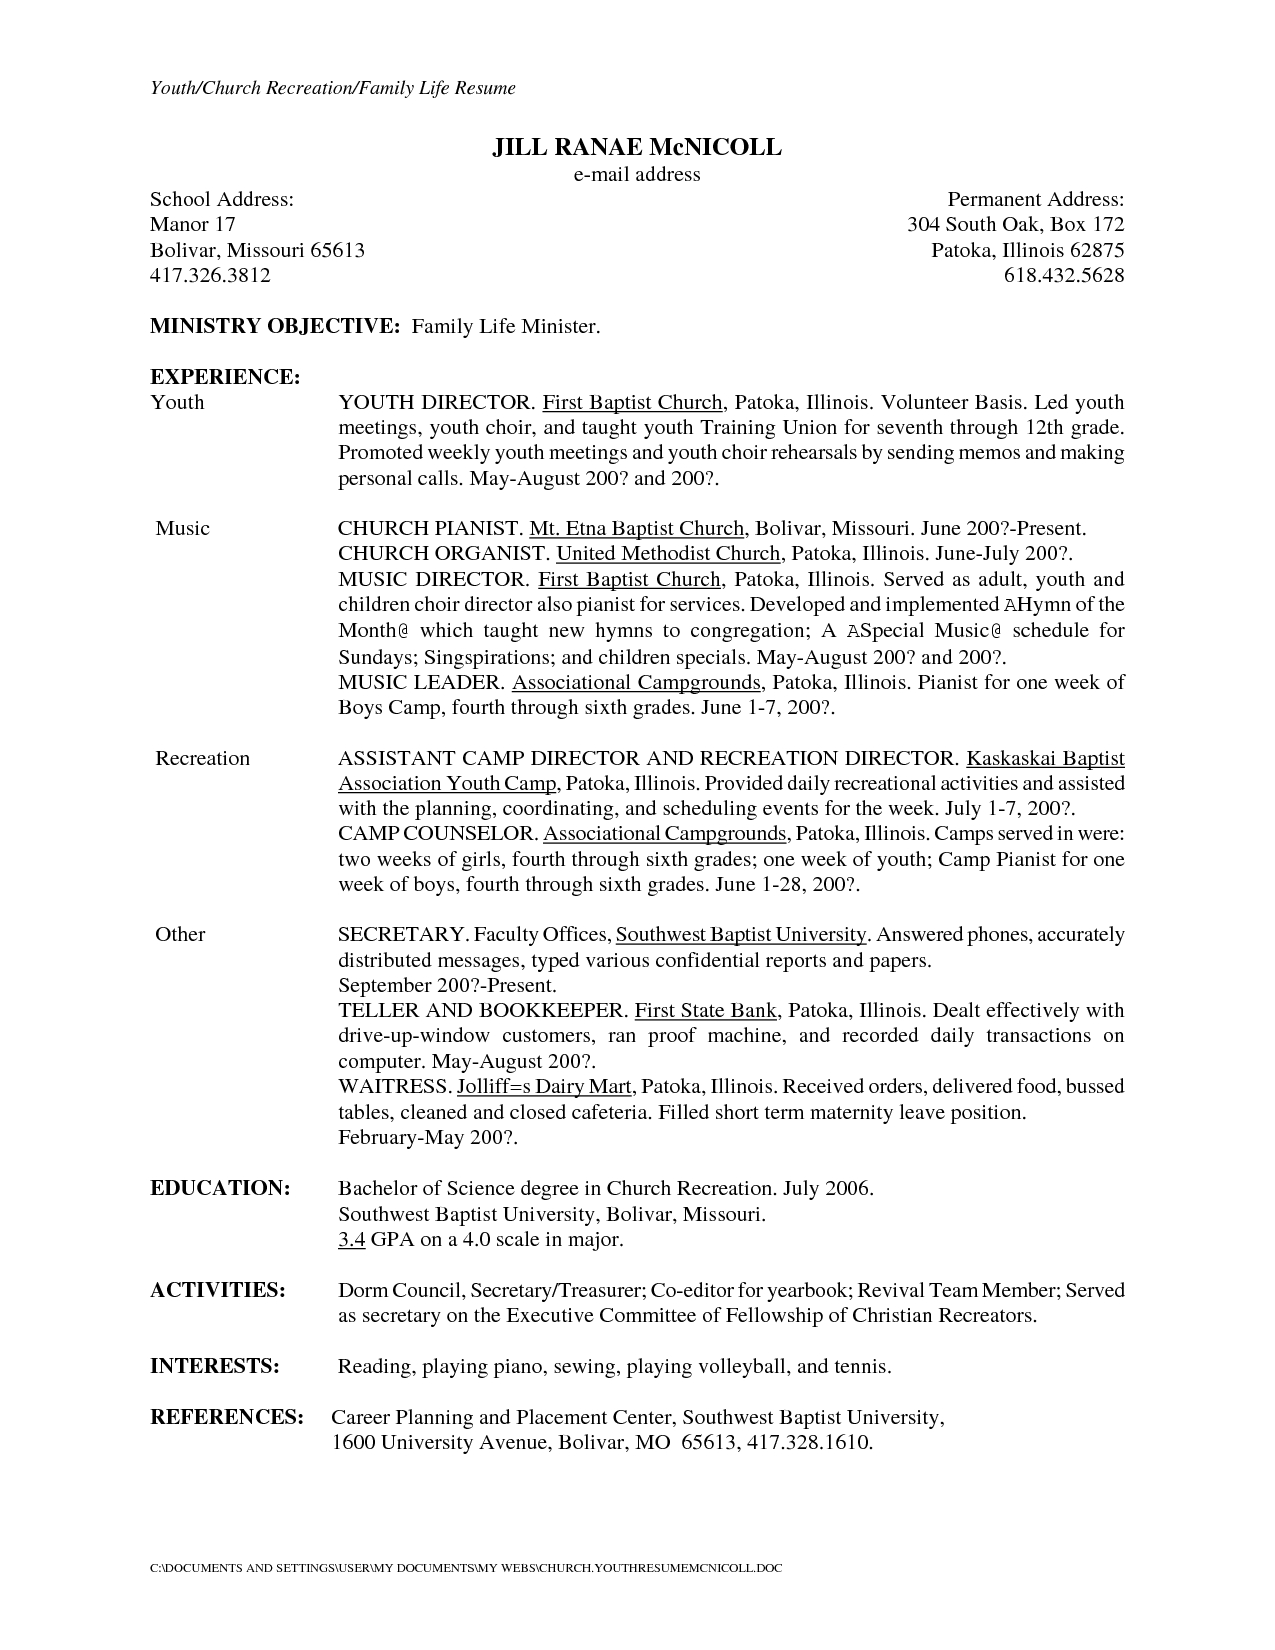 Secretary Cover Letter Template - Resume Template for Secretary Resume Templates Nursing Unit Clerk